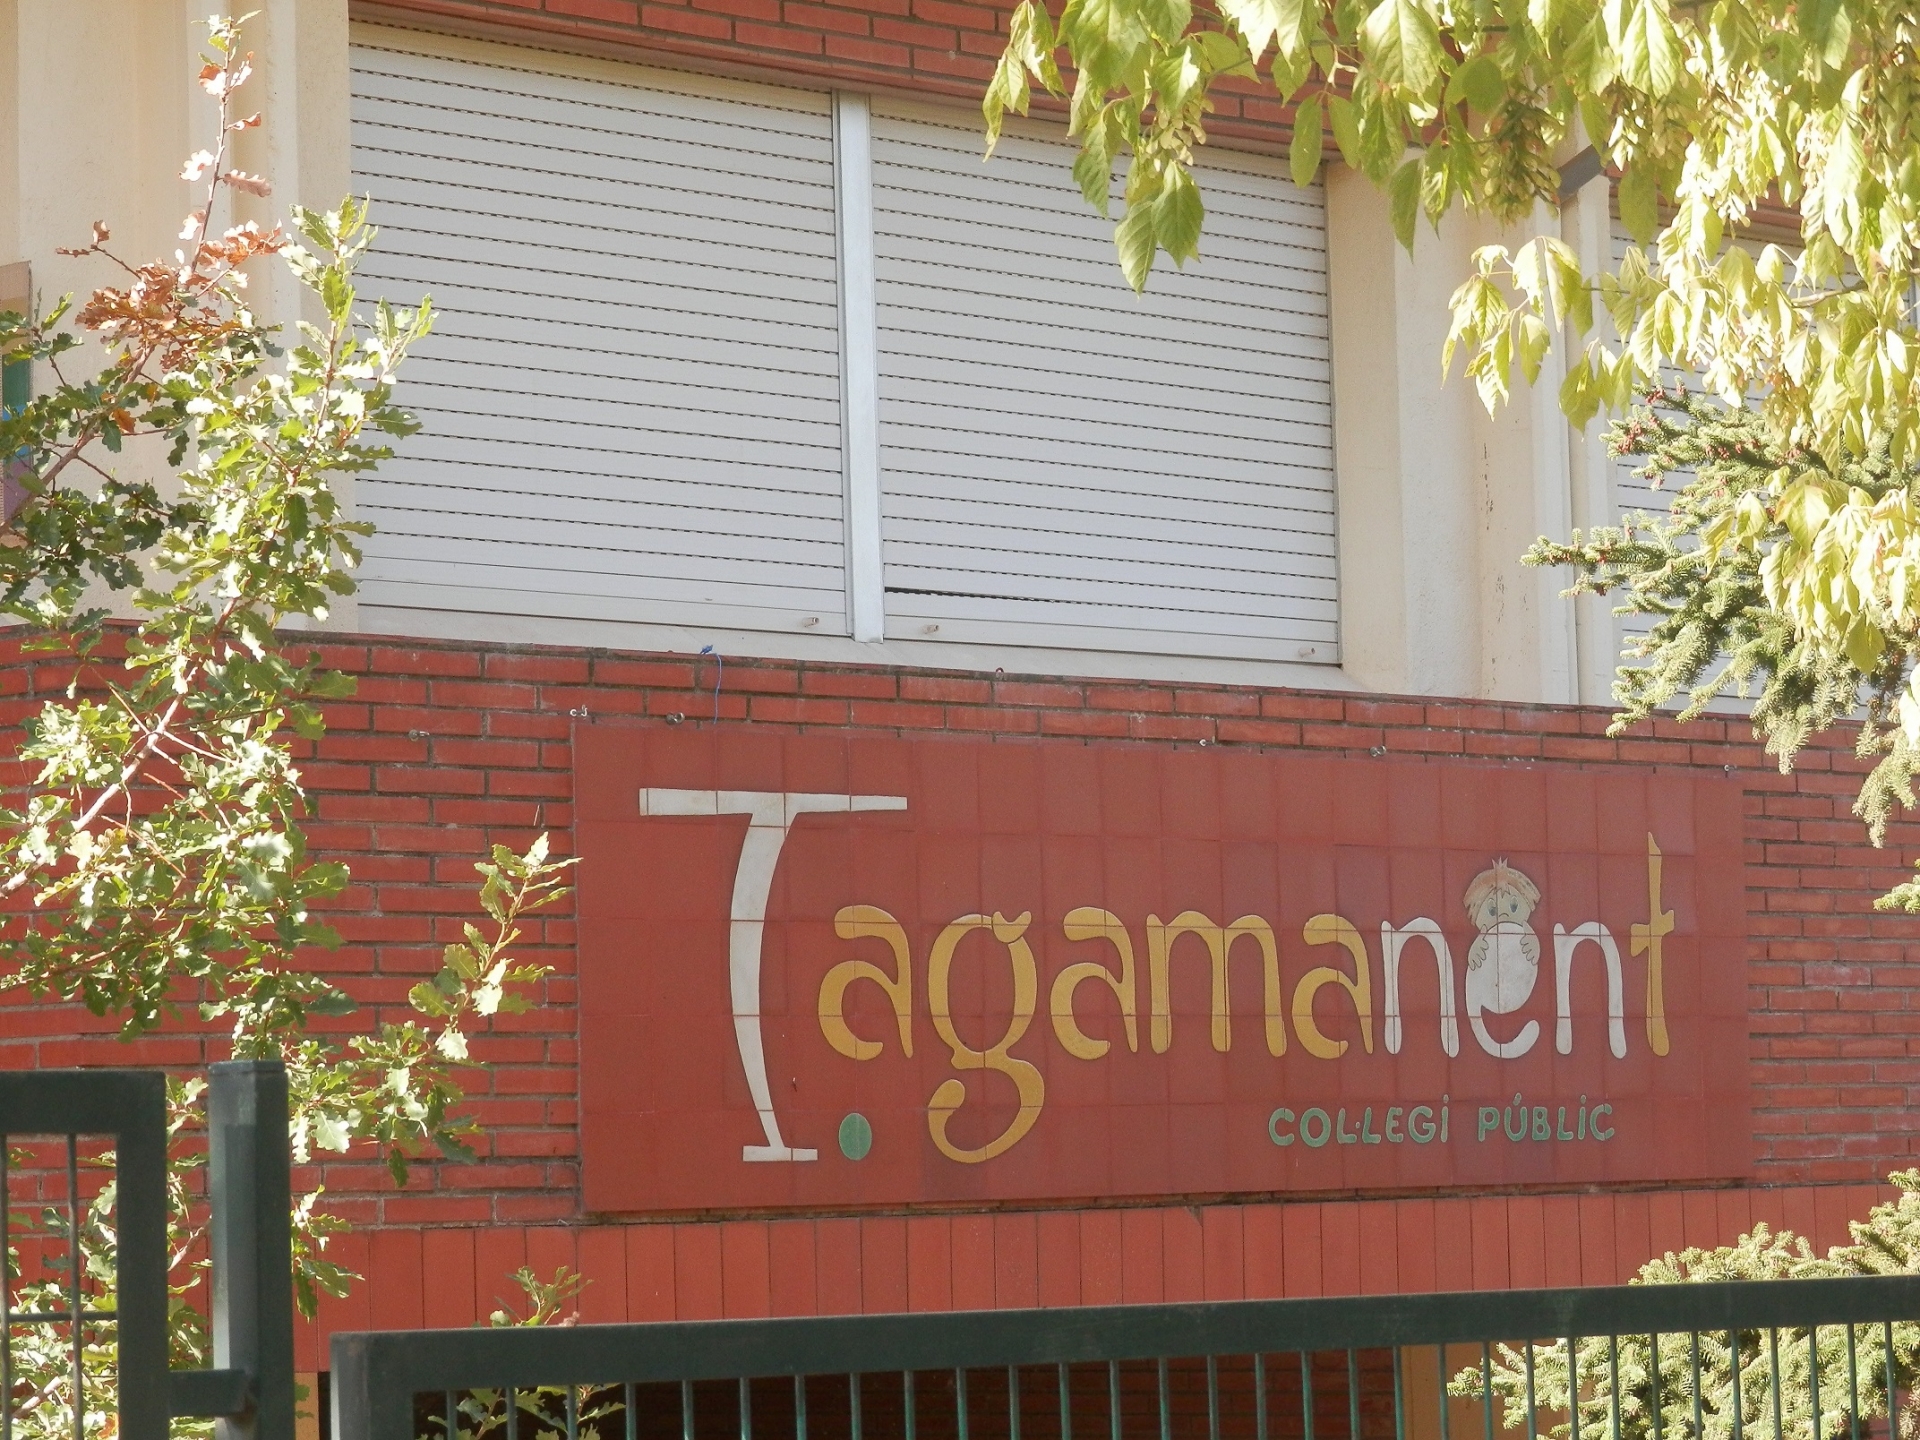 Escola Tagamanent